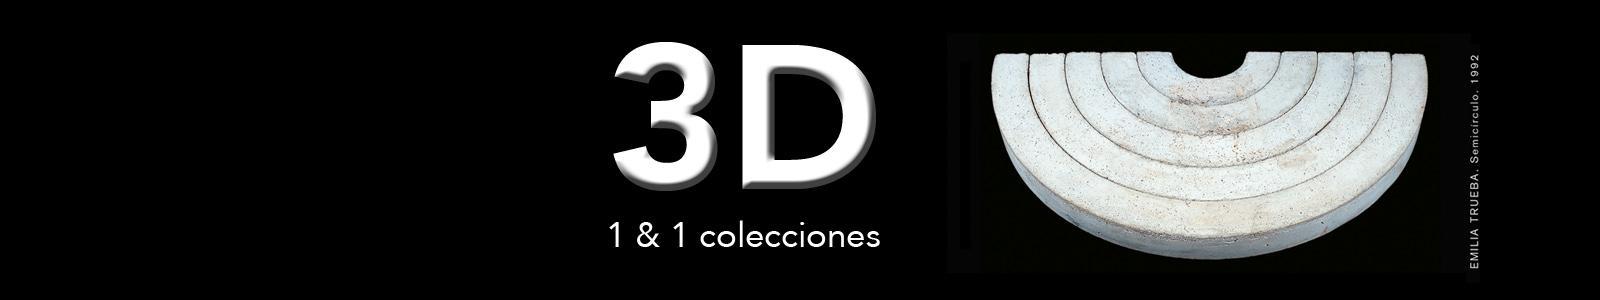 EXPOSICIÓN, 3D 1&1 Colecciones